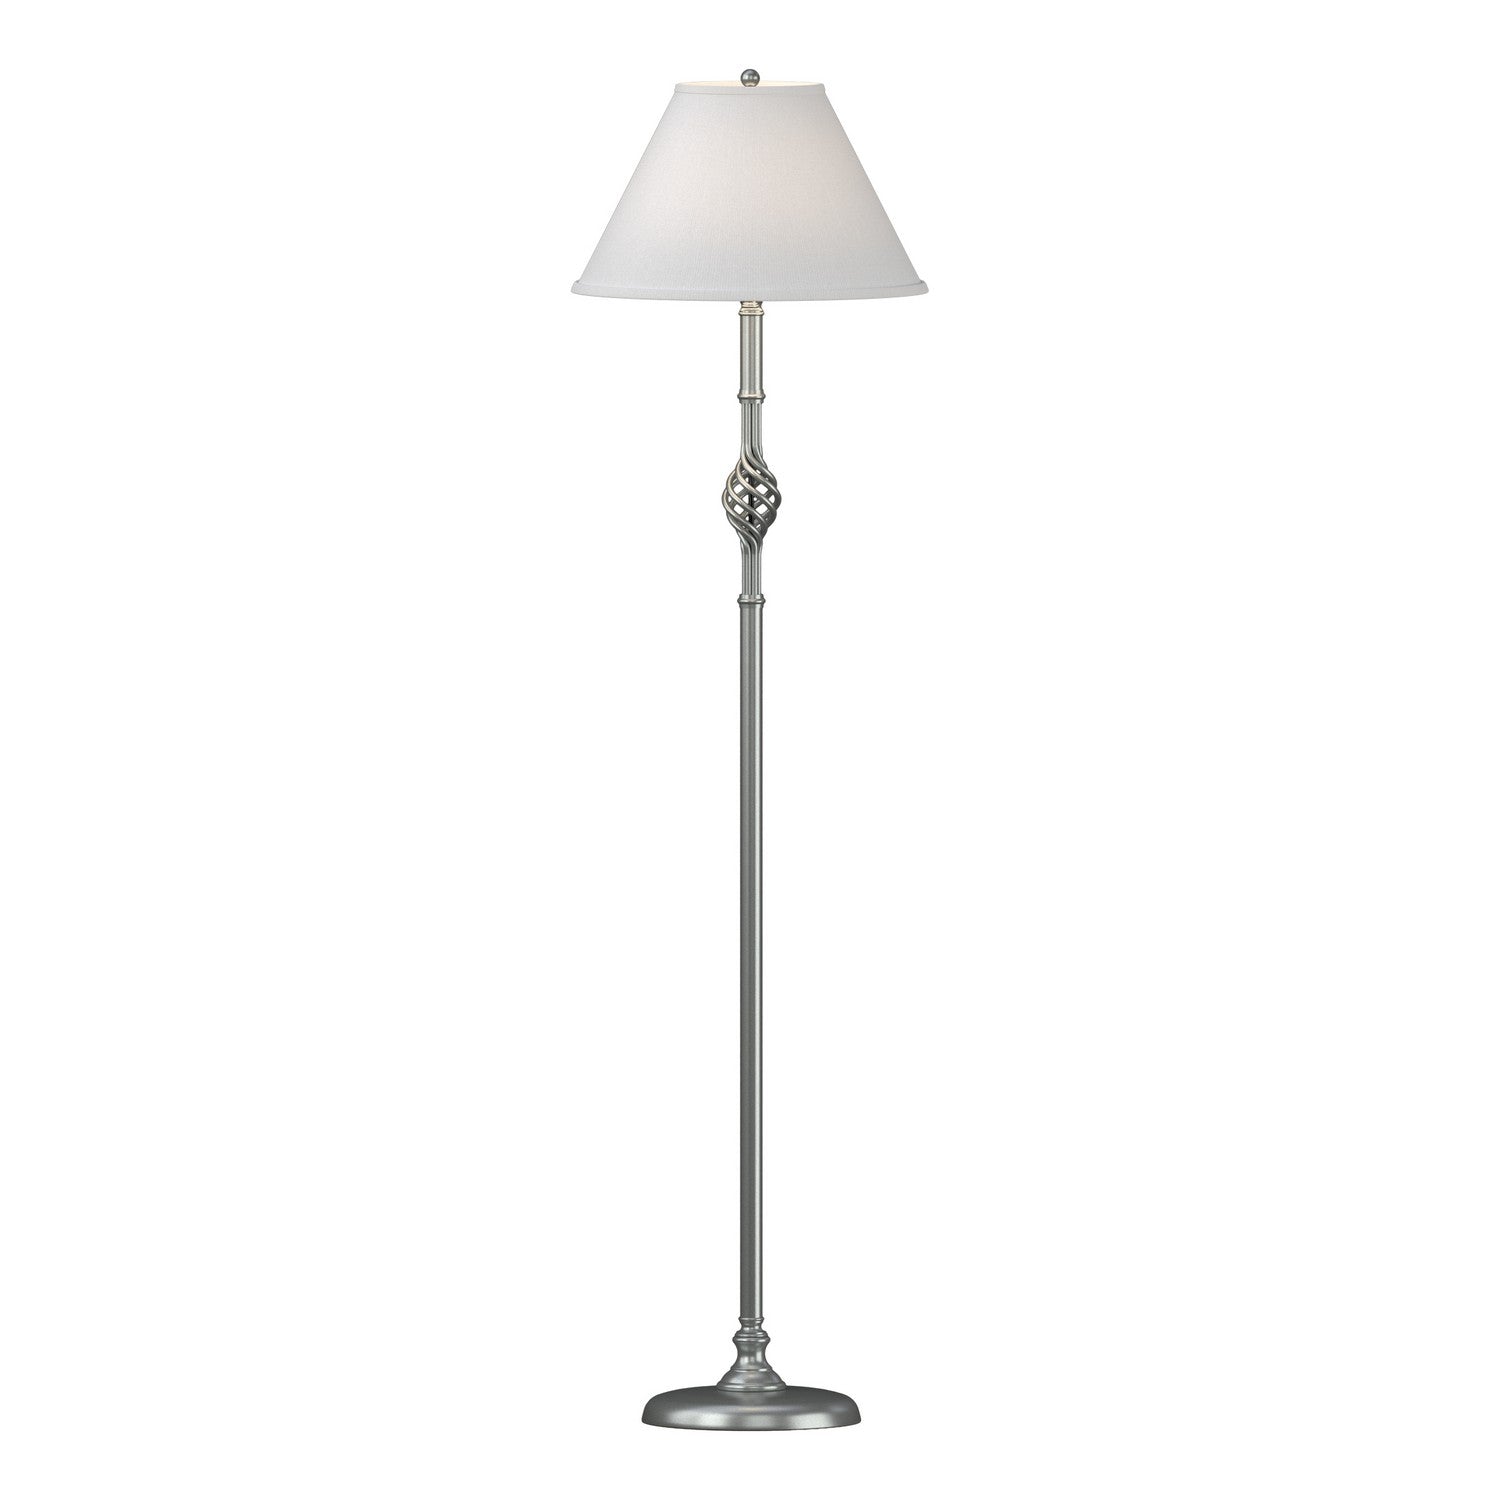 Hubbardton Forge - One Light Floor Lamp - Twist Basket - Vintage Platinum- Union Lighting Luminaires Decor